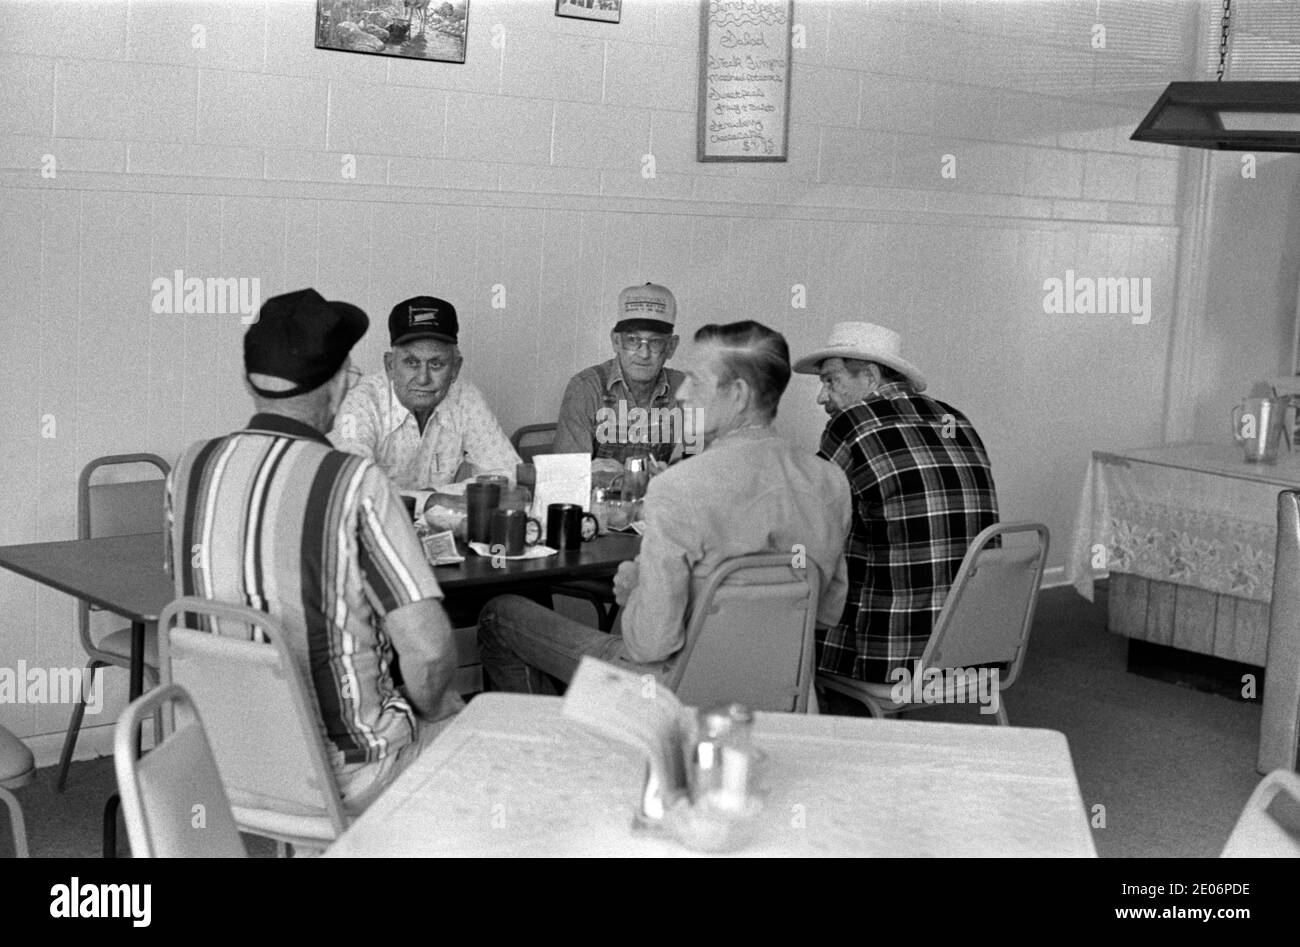 Gruppe von blauen Kragen arbeitenden Männern hält ein Treffen in einem Restaurant, Restaurant Sweetwater, Nolan County, Texas, 1999 1990er USA HOMER SYKES Stockfoto